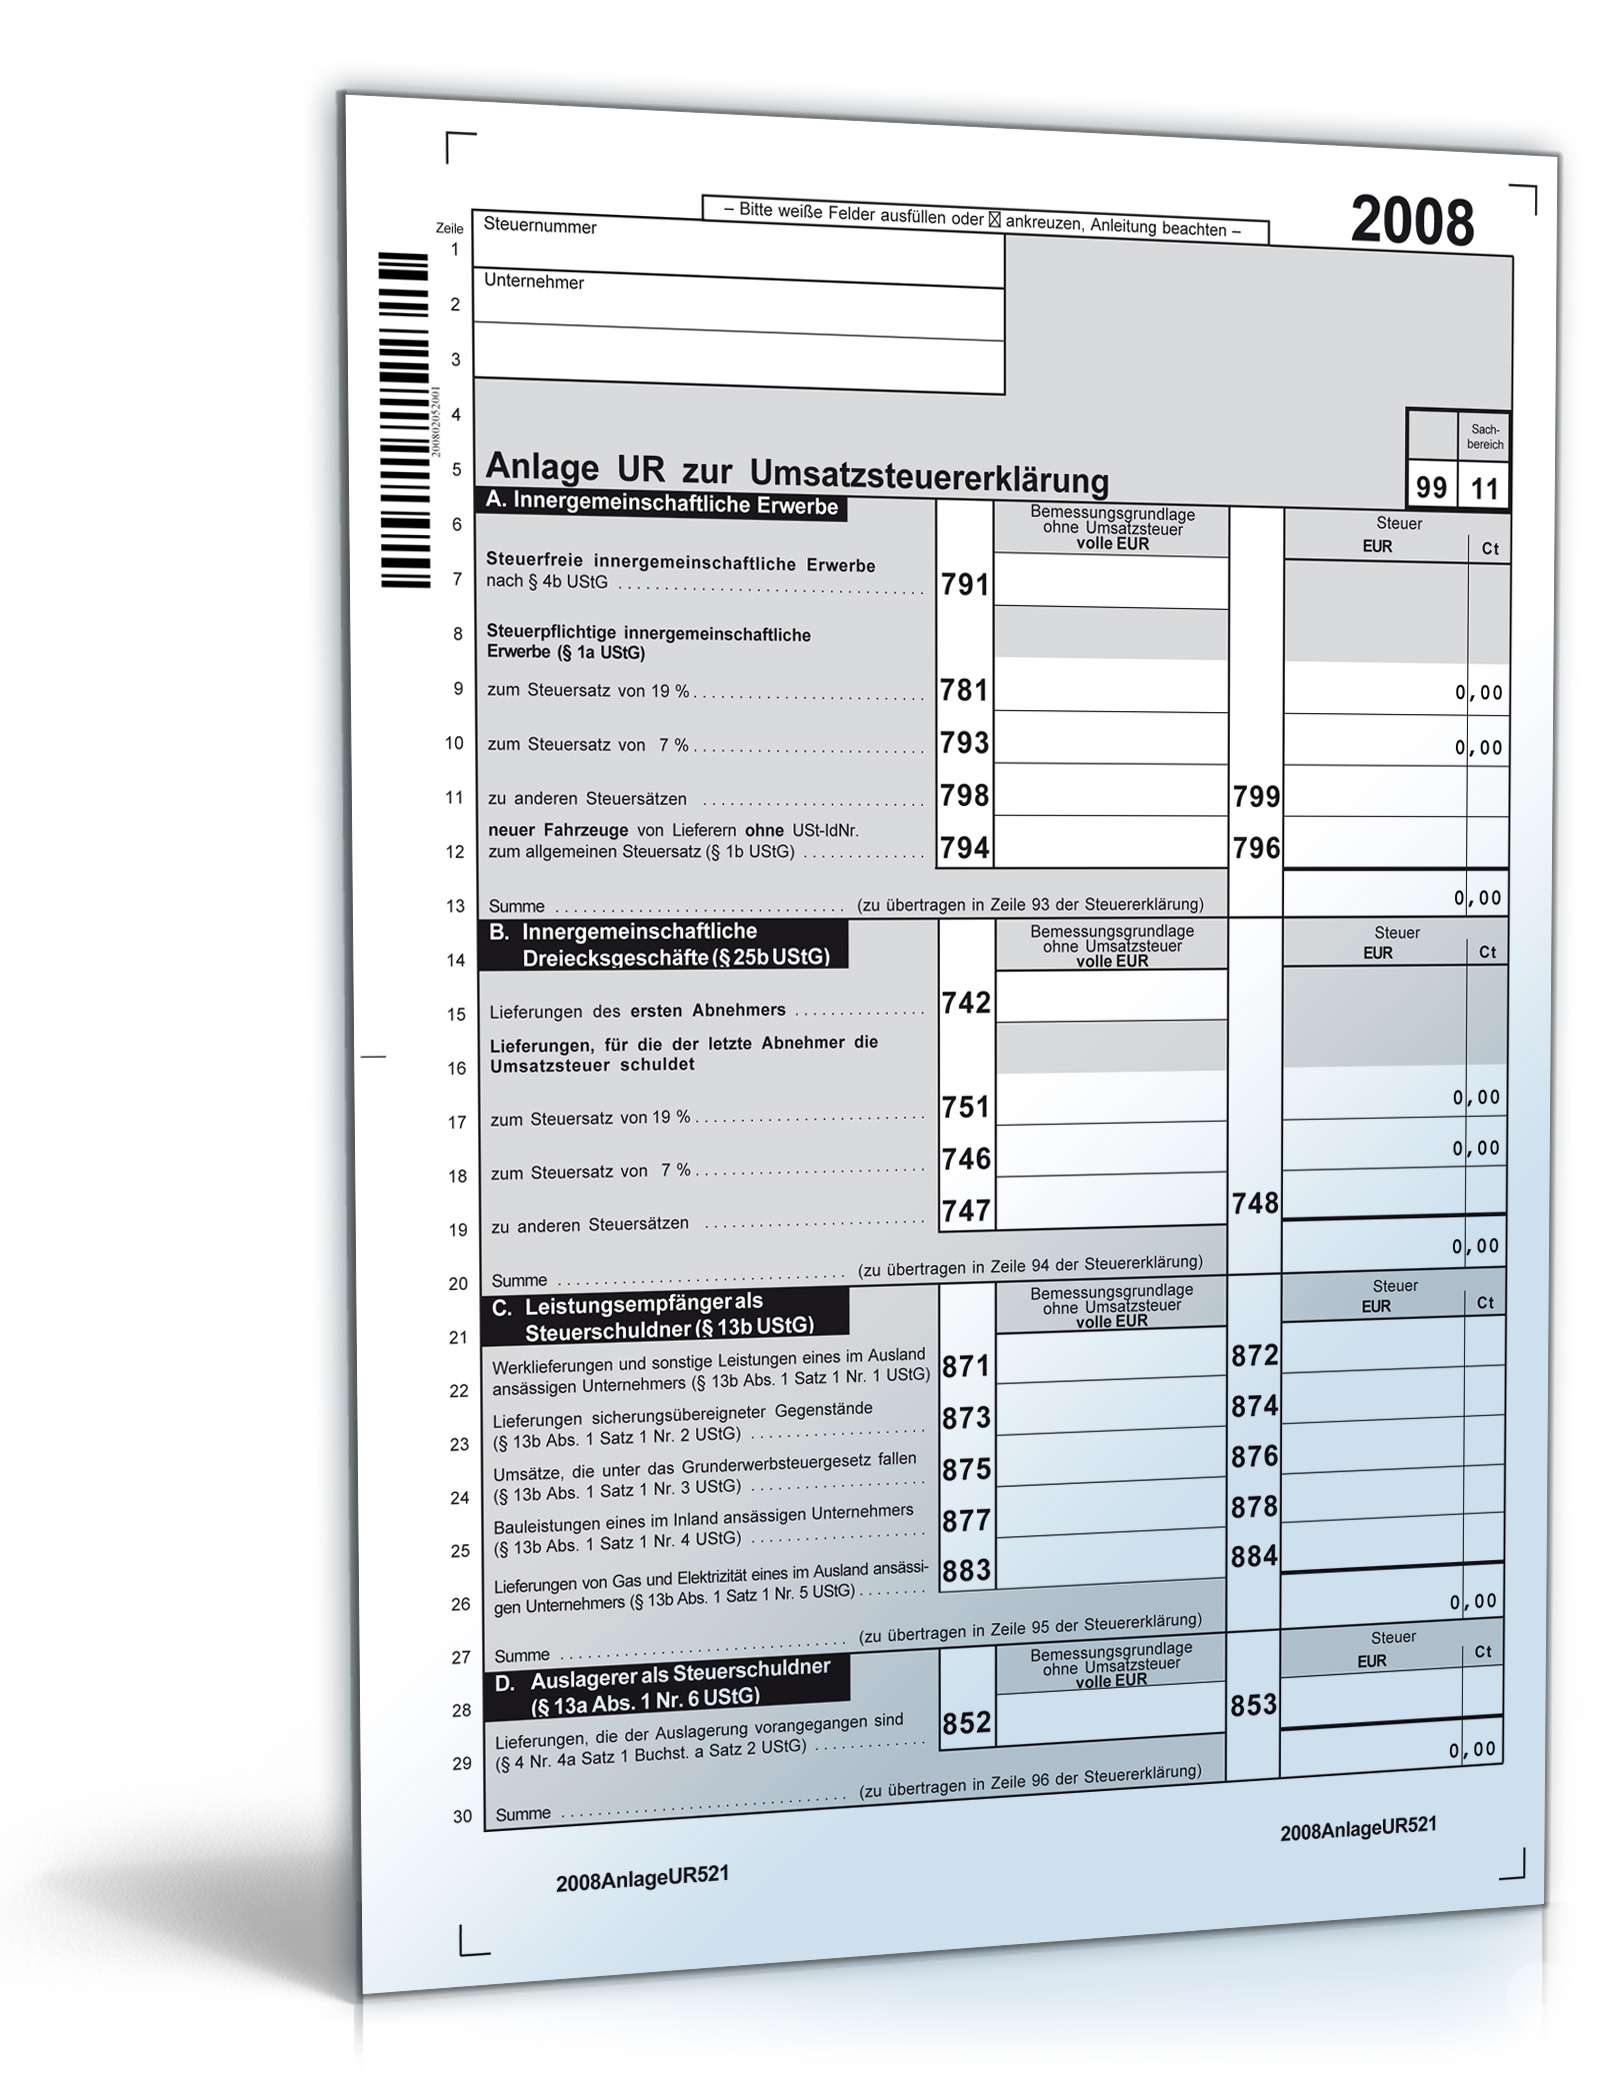 Hauptbild des Produkts: Anlage UR zur Umsatzsteuererklärung 2008